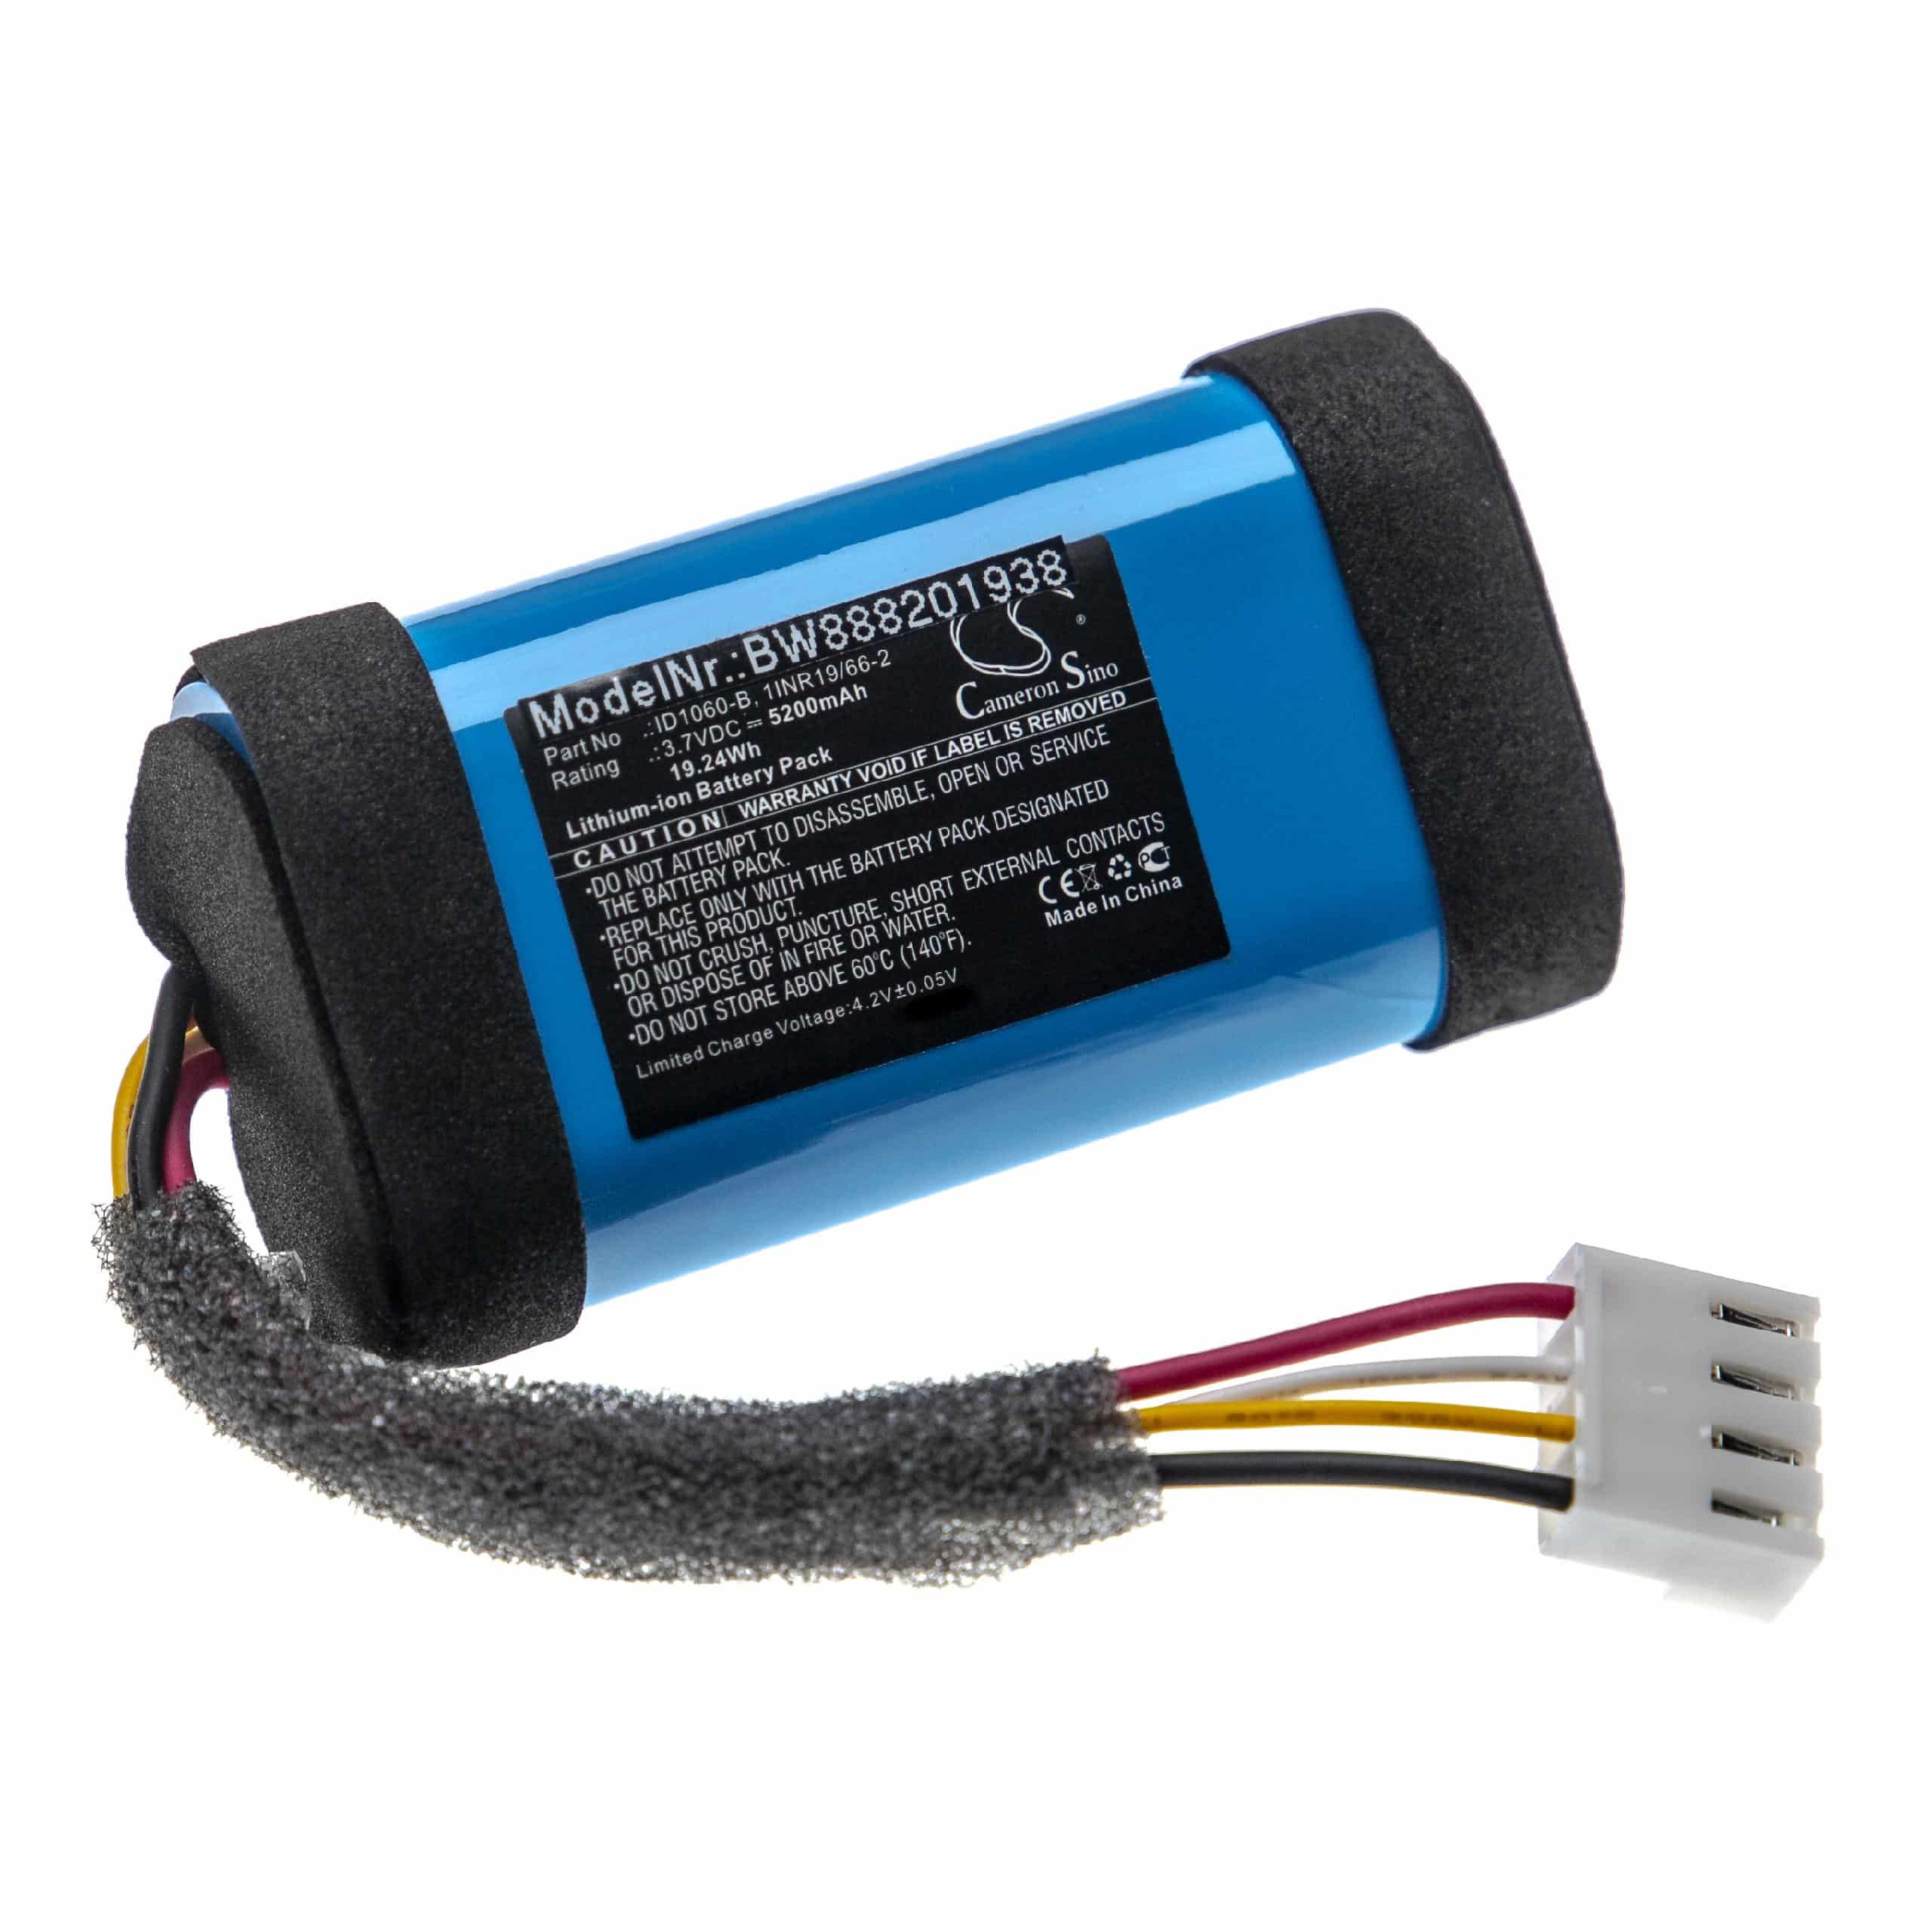 Akumulator do głośnika JBL zamiennik JBL 49-364800-1BAT2-A, ID1060-A, 1INR19/66-2, ID1060-B - Li-Ion 5200mAh